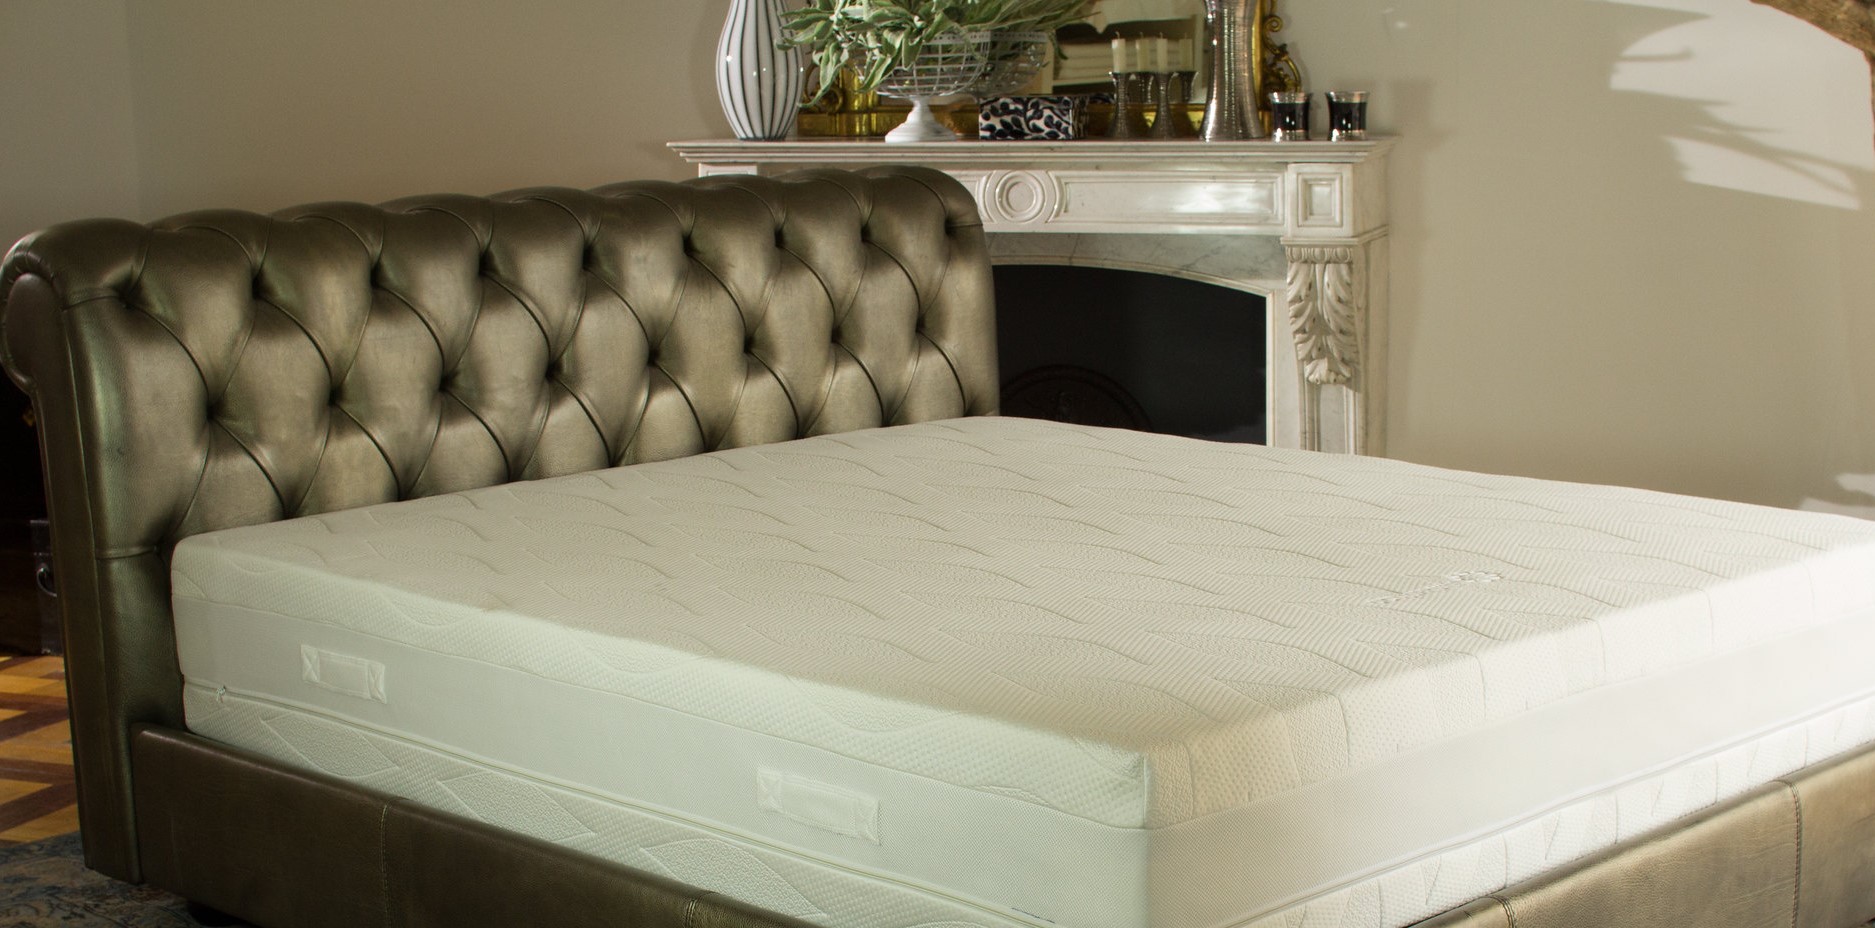 Изголовье кровати прекрасно дополнит классический интерьер спальни